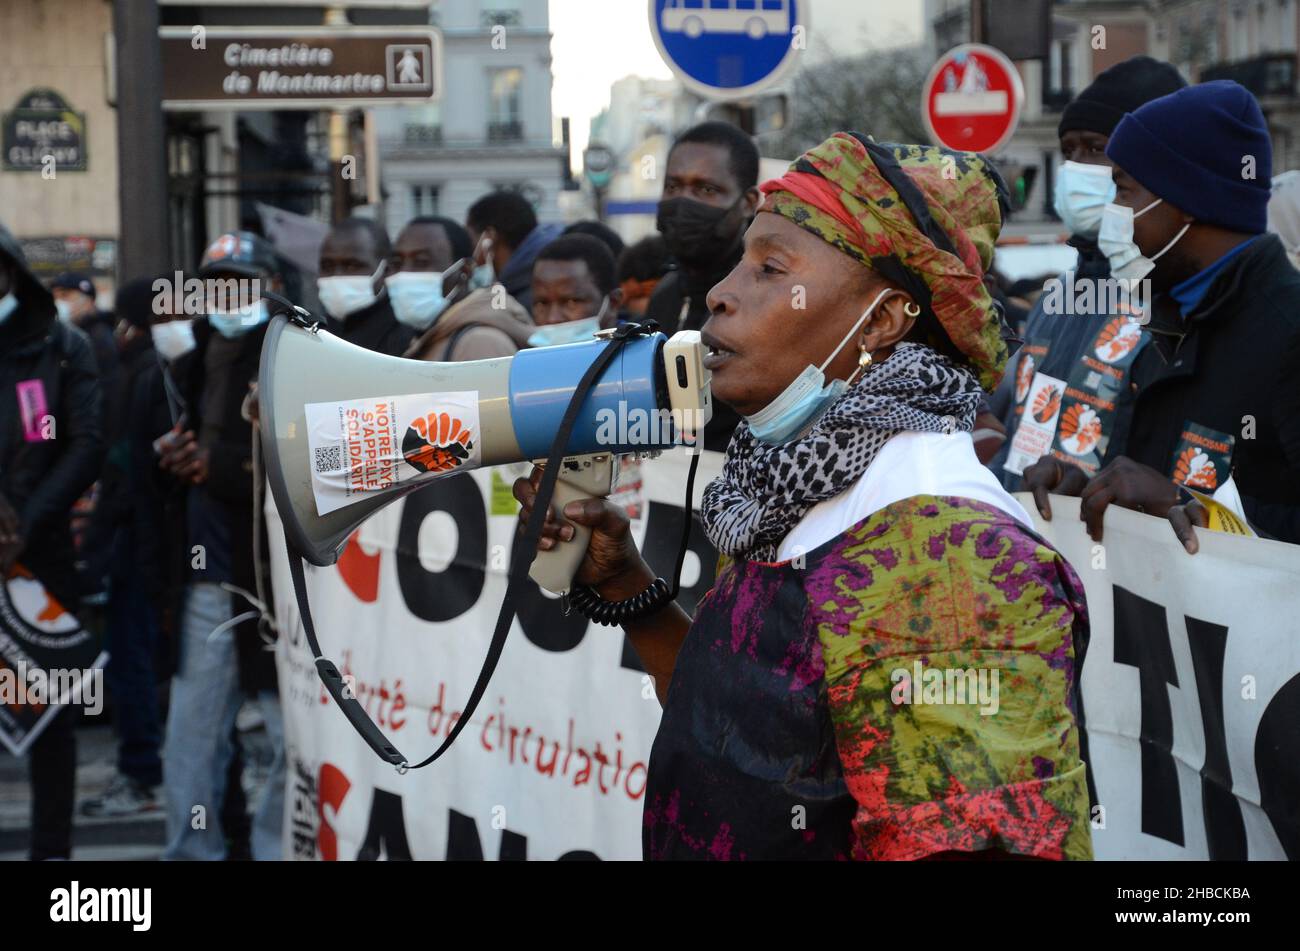 Zum Internationalen Tag der Migranten wurde in Paris eine Demonstration organisiert. Der Slogan lautete: „Solidarität“, alle hundert Menschen reagierten anwesend Stockfoto